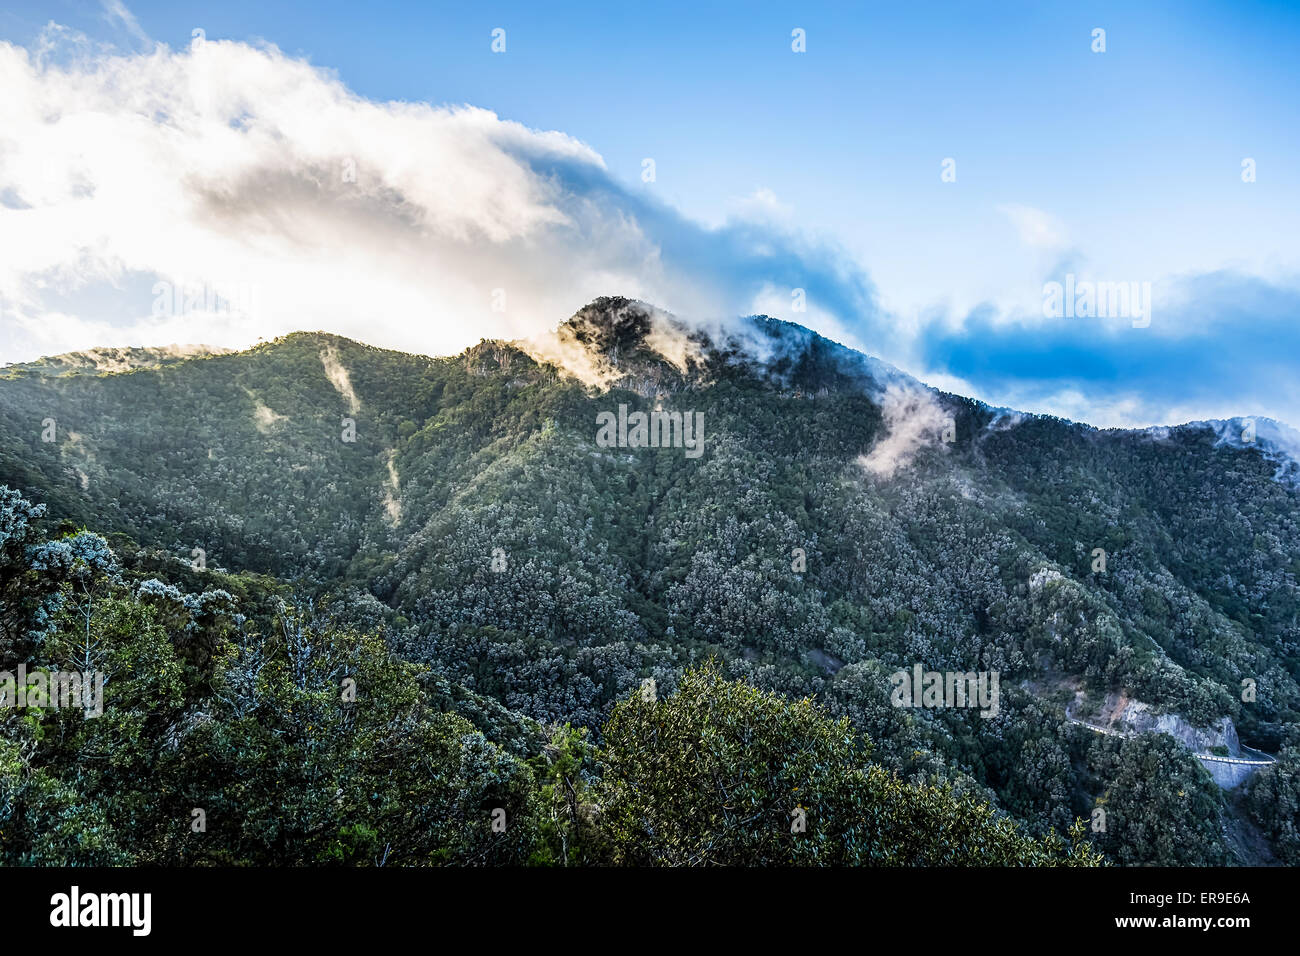 Le vert des montagnes avec des nuages blancs sur le ciel bleu paysage dans l'île de Ténérife, Espagne Banque D'Images